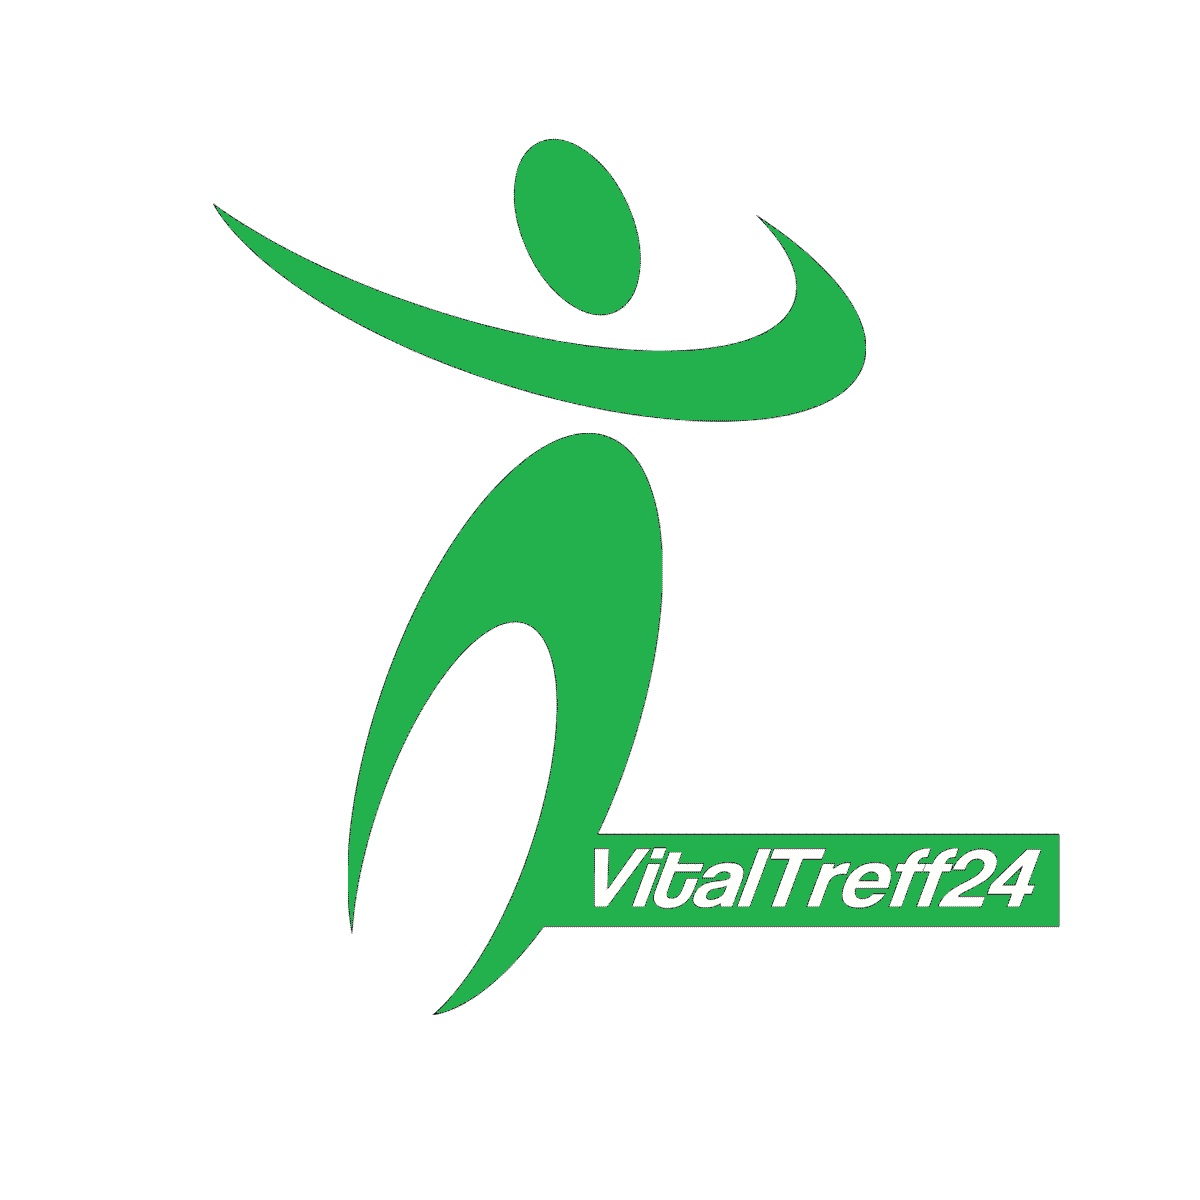 VitalTreff24 GmbH Logo